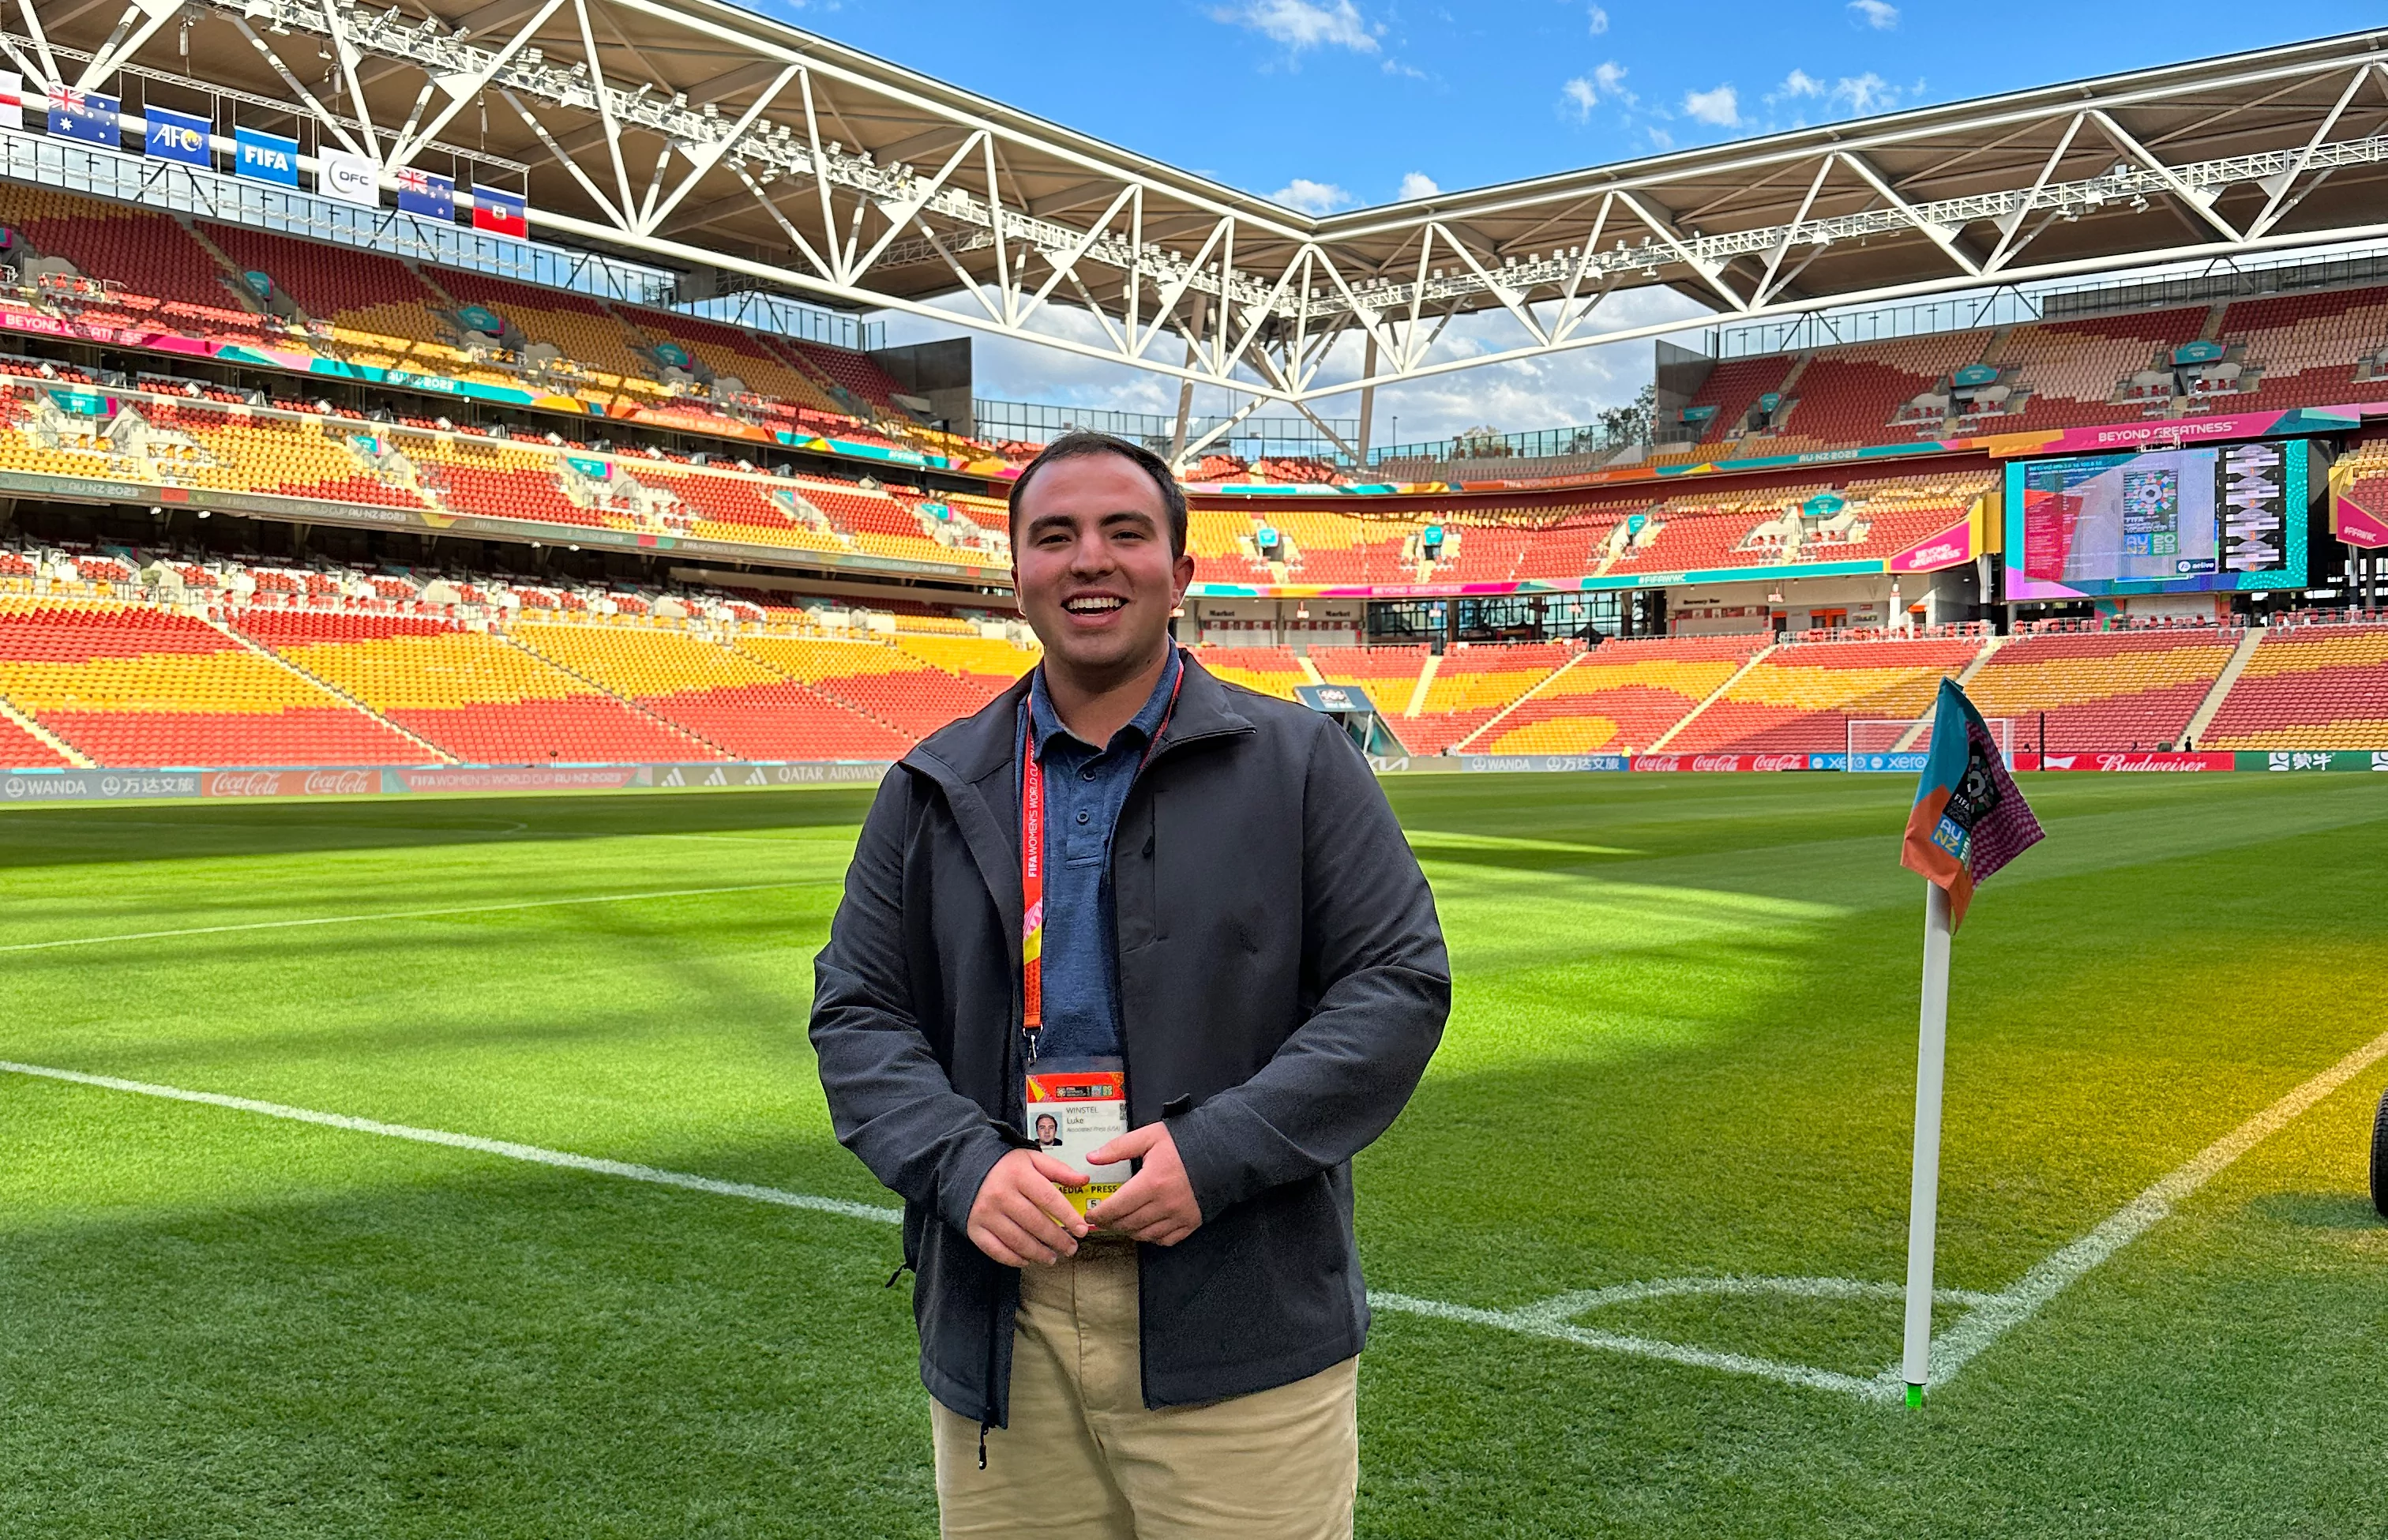 Luke Winstel stands on a Women's World Cup soccer field